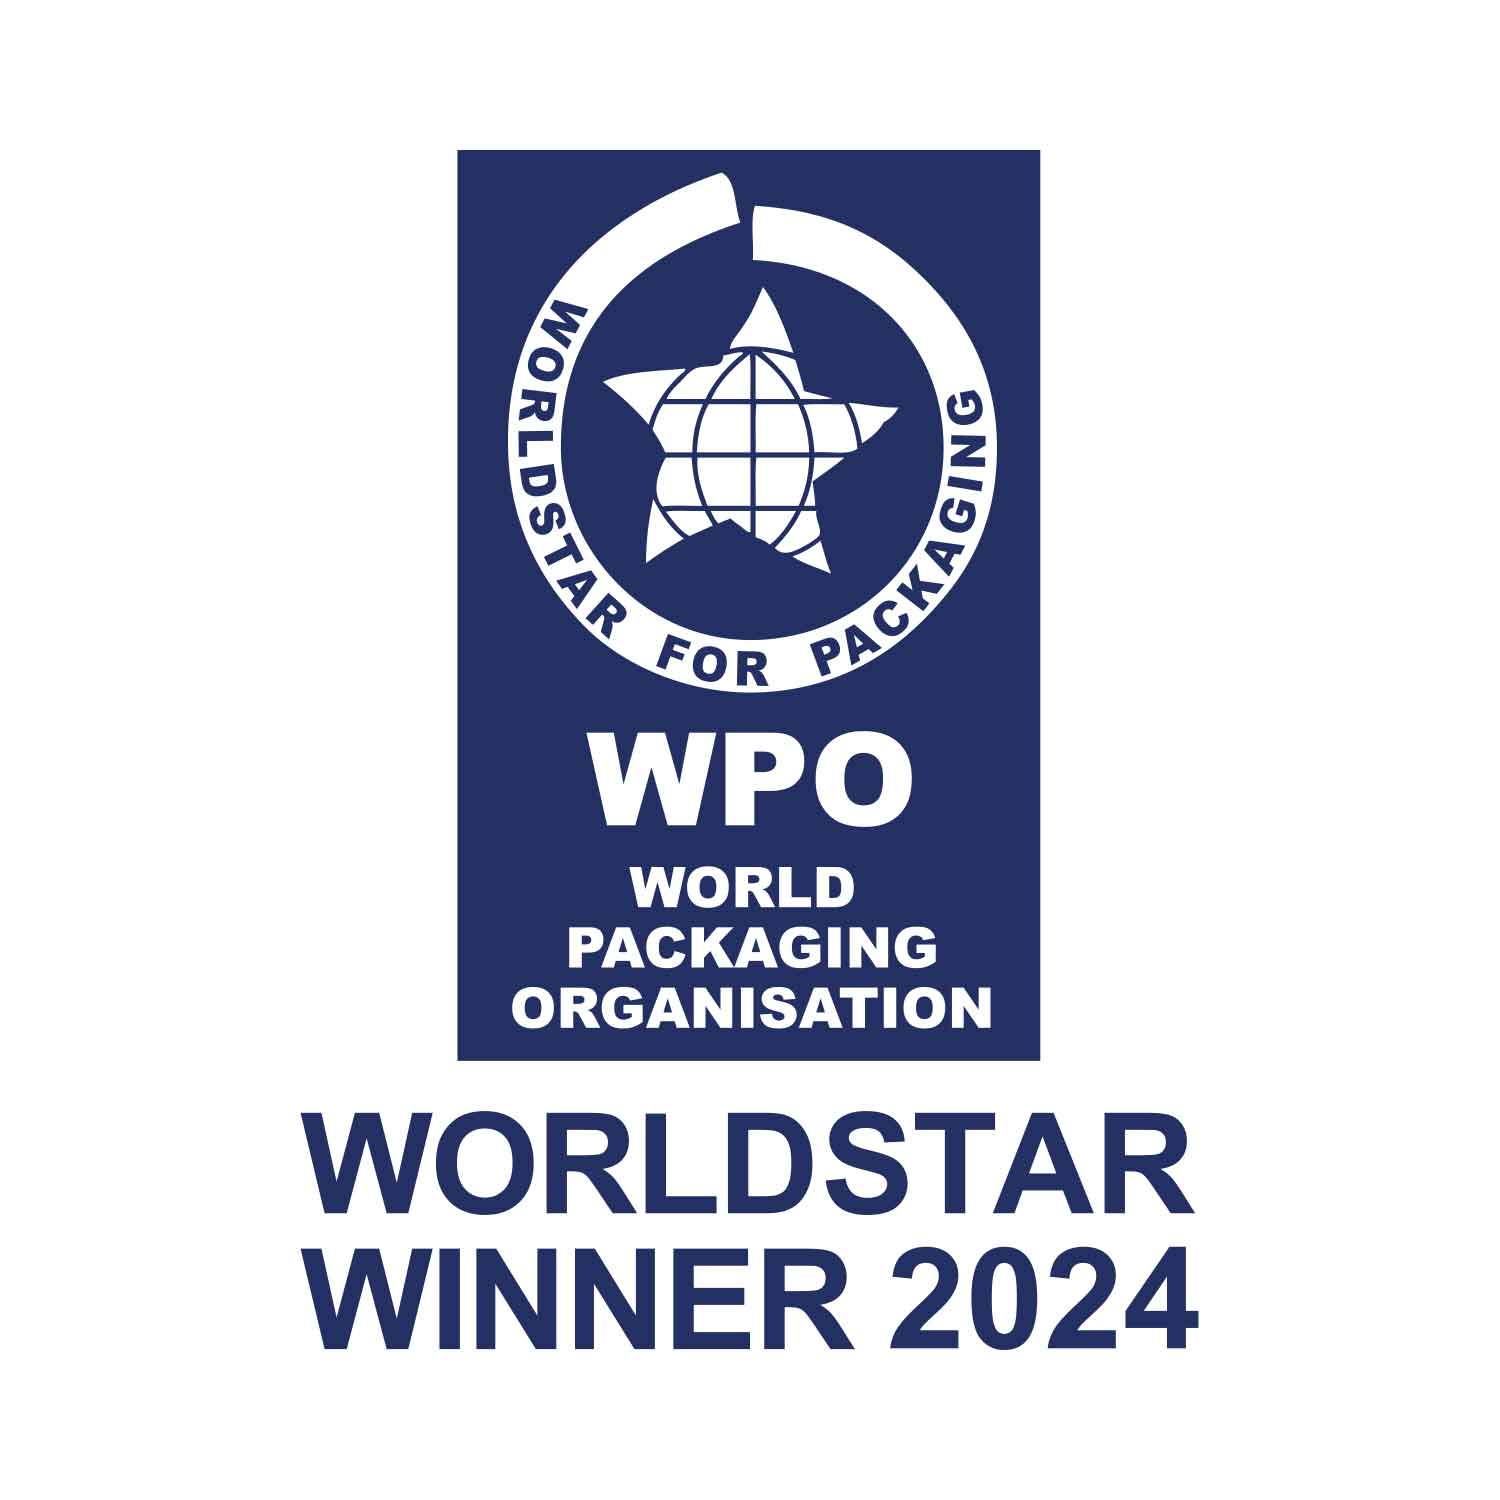 Worldstar Award Winner 2024